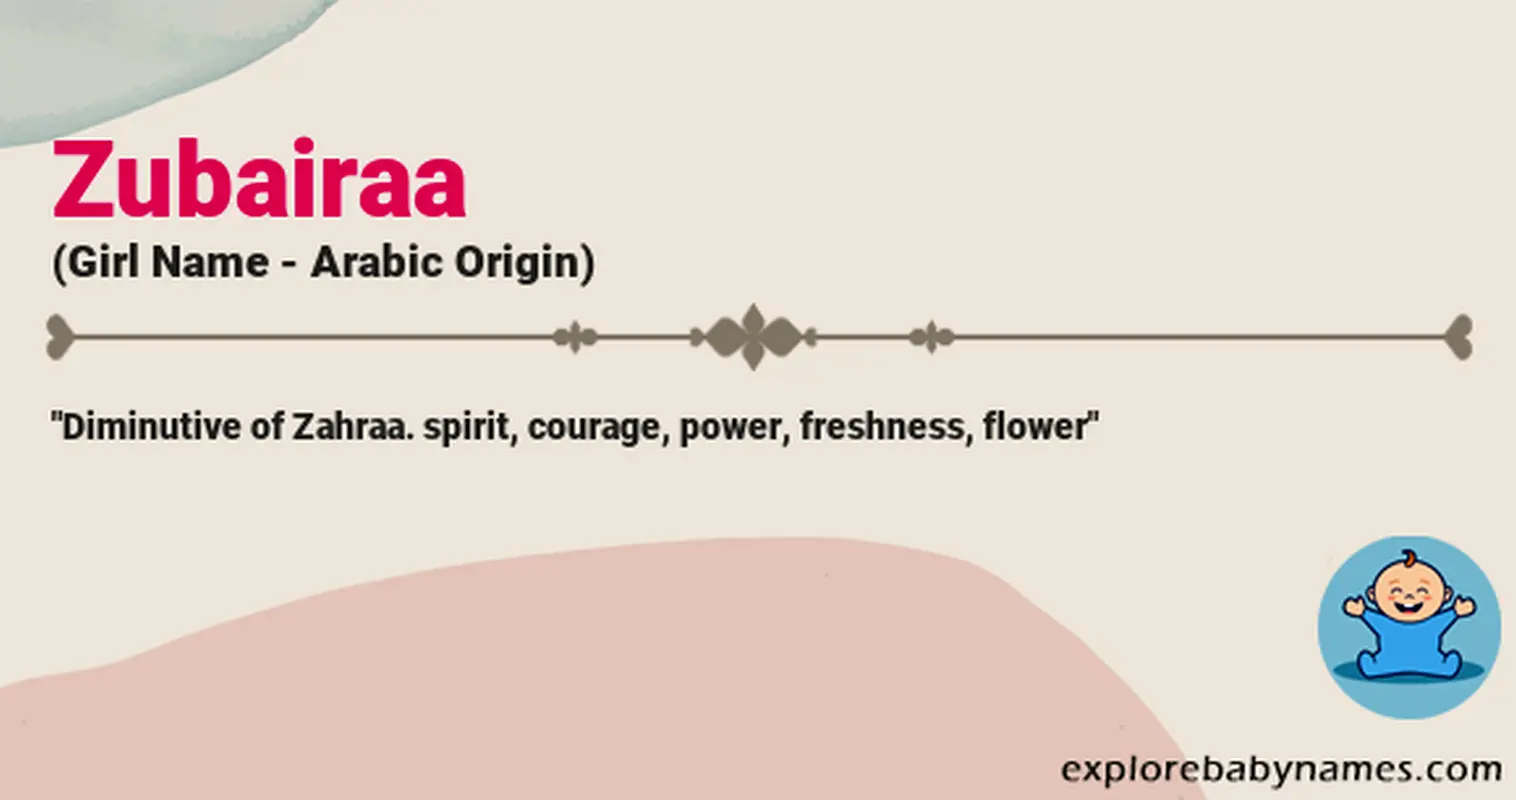 Meaning of Zubairaa